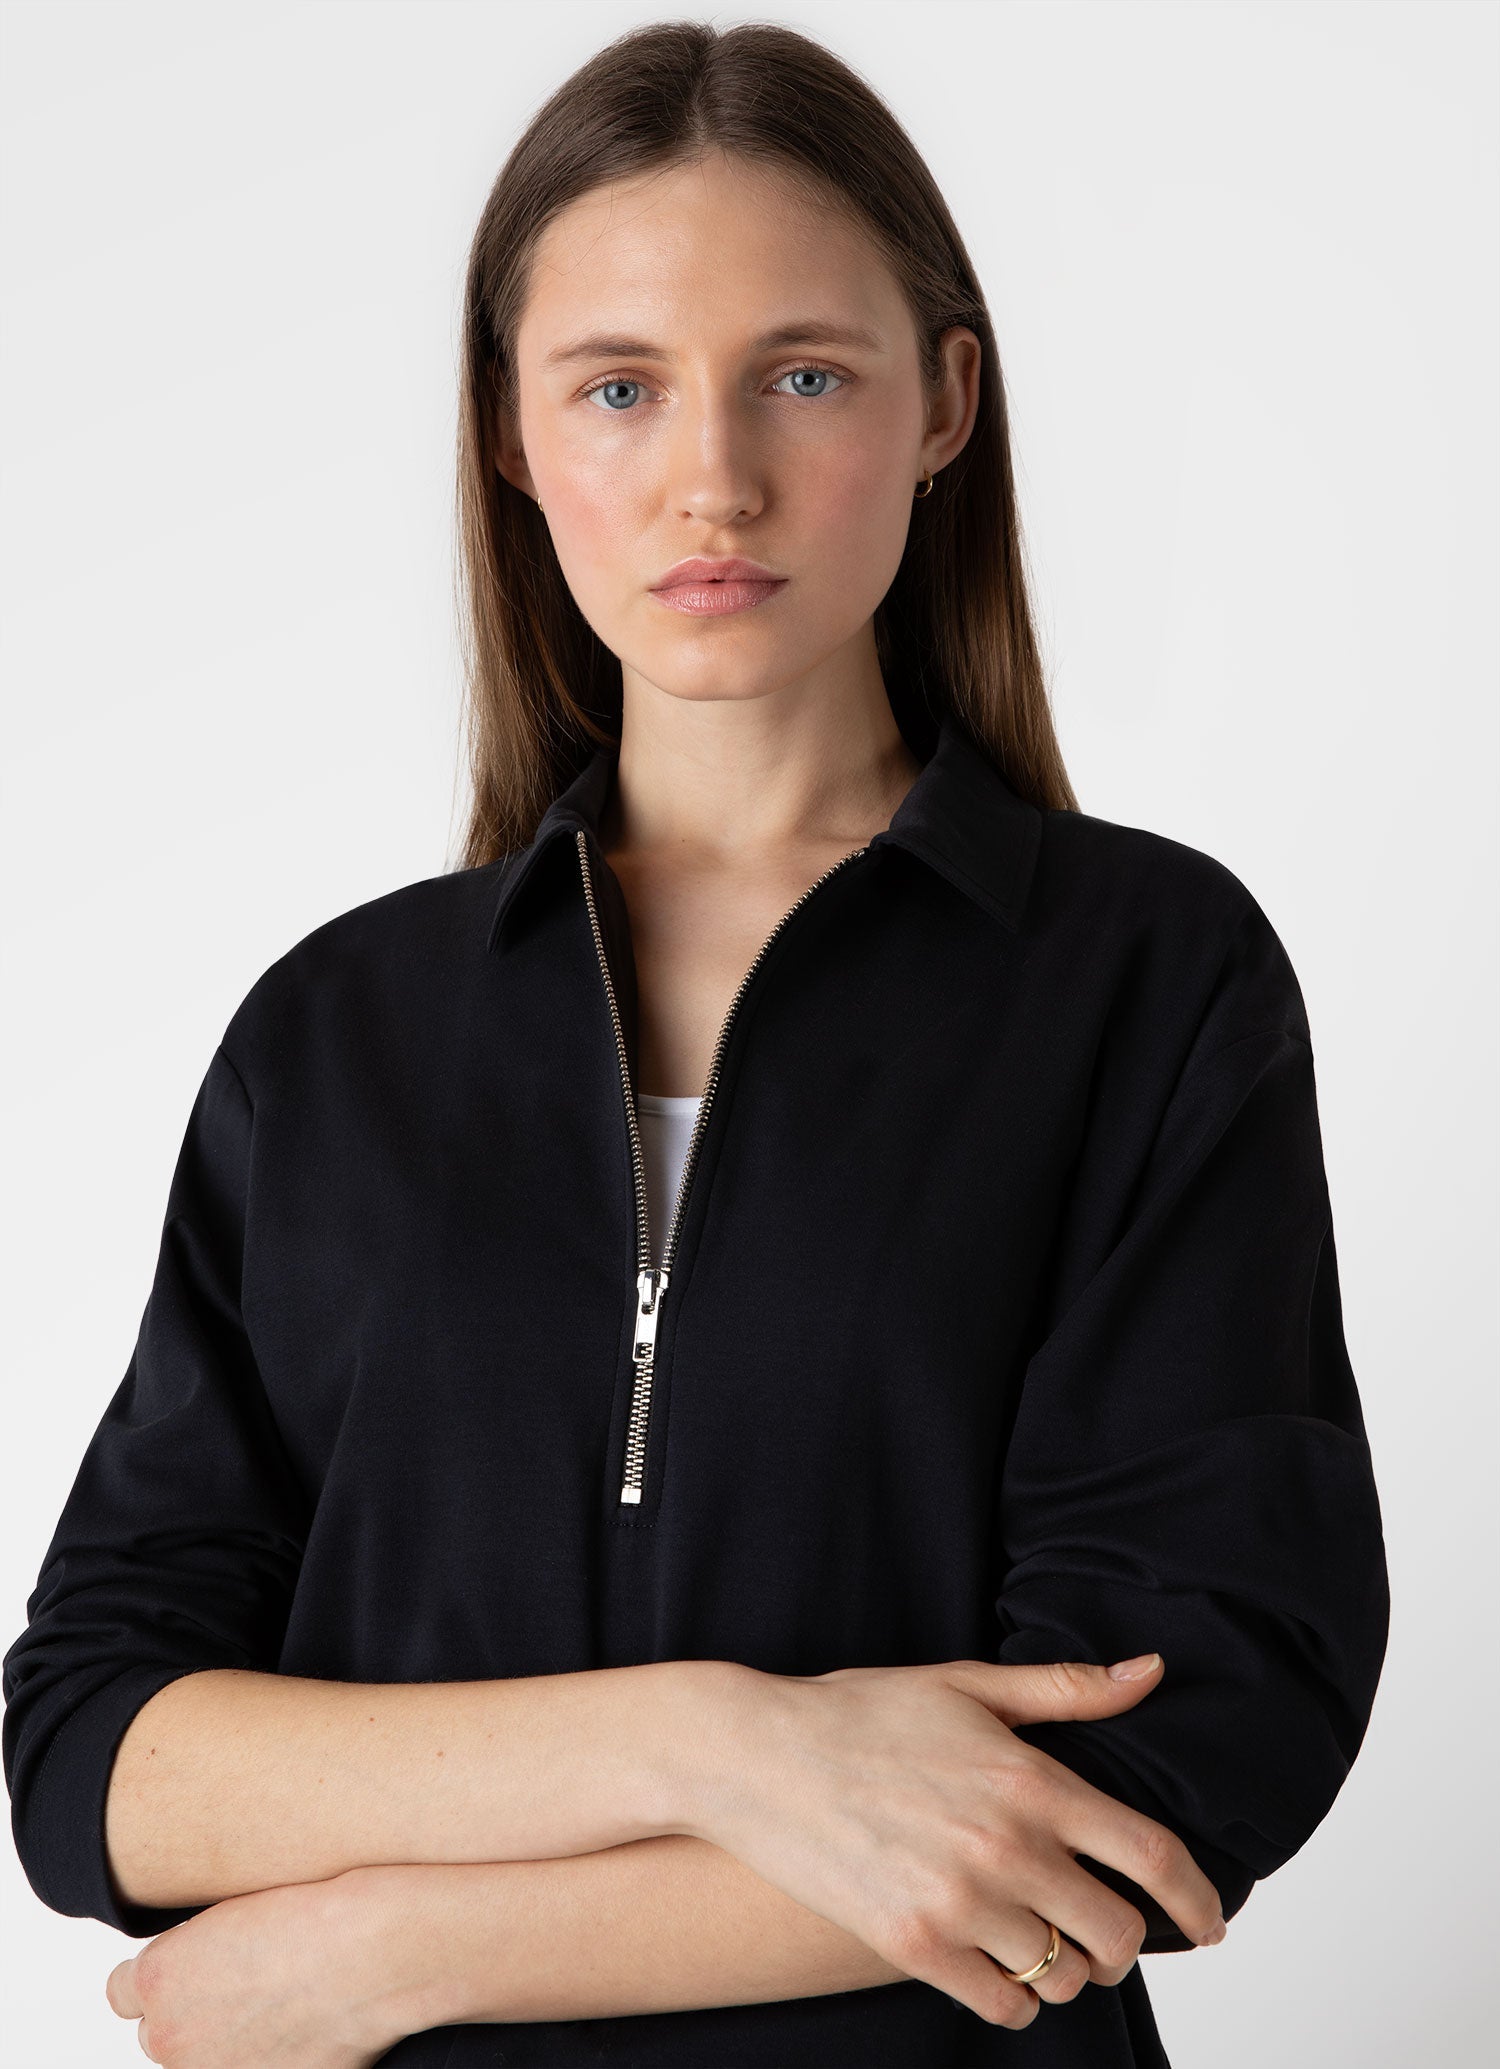 Women's Jersey Polo Top in Black